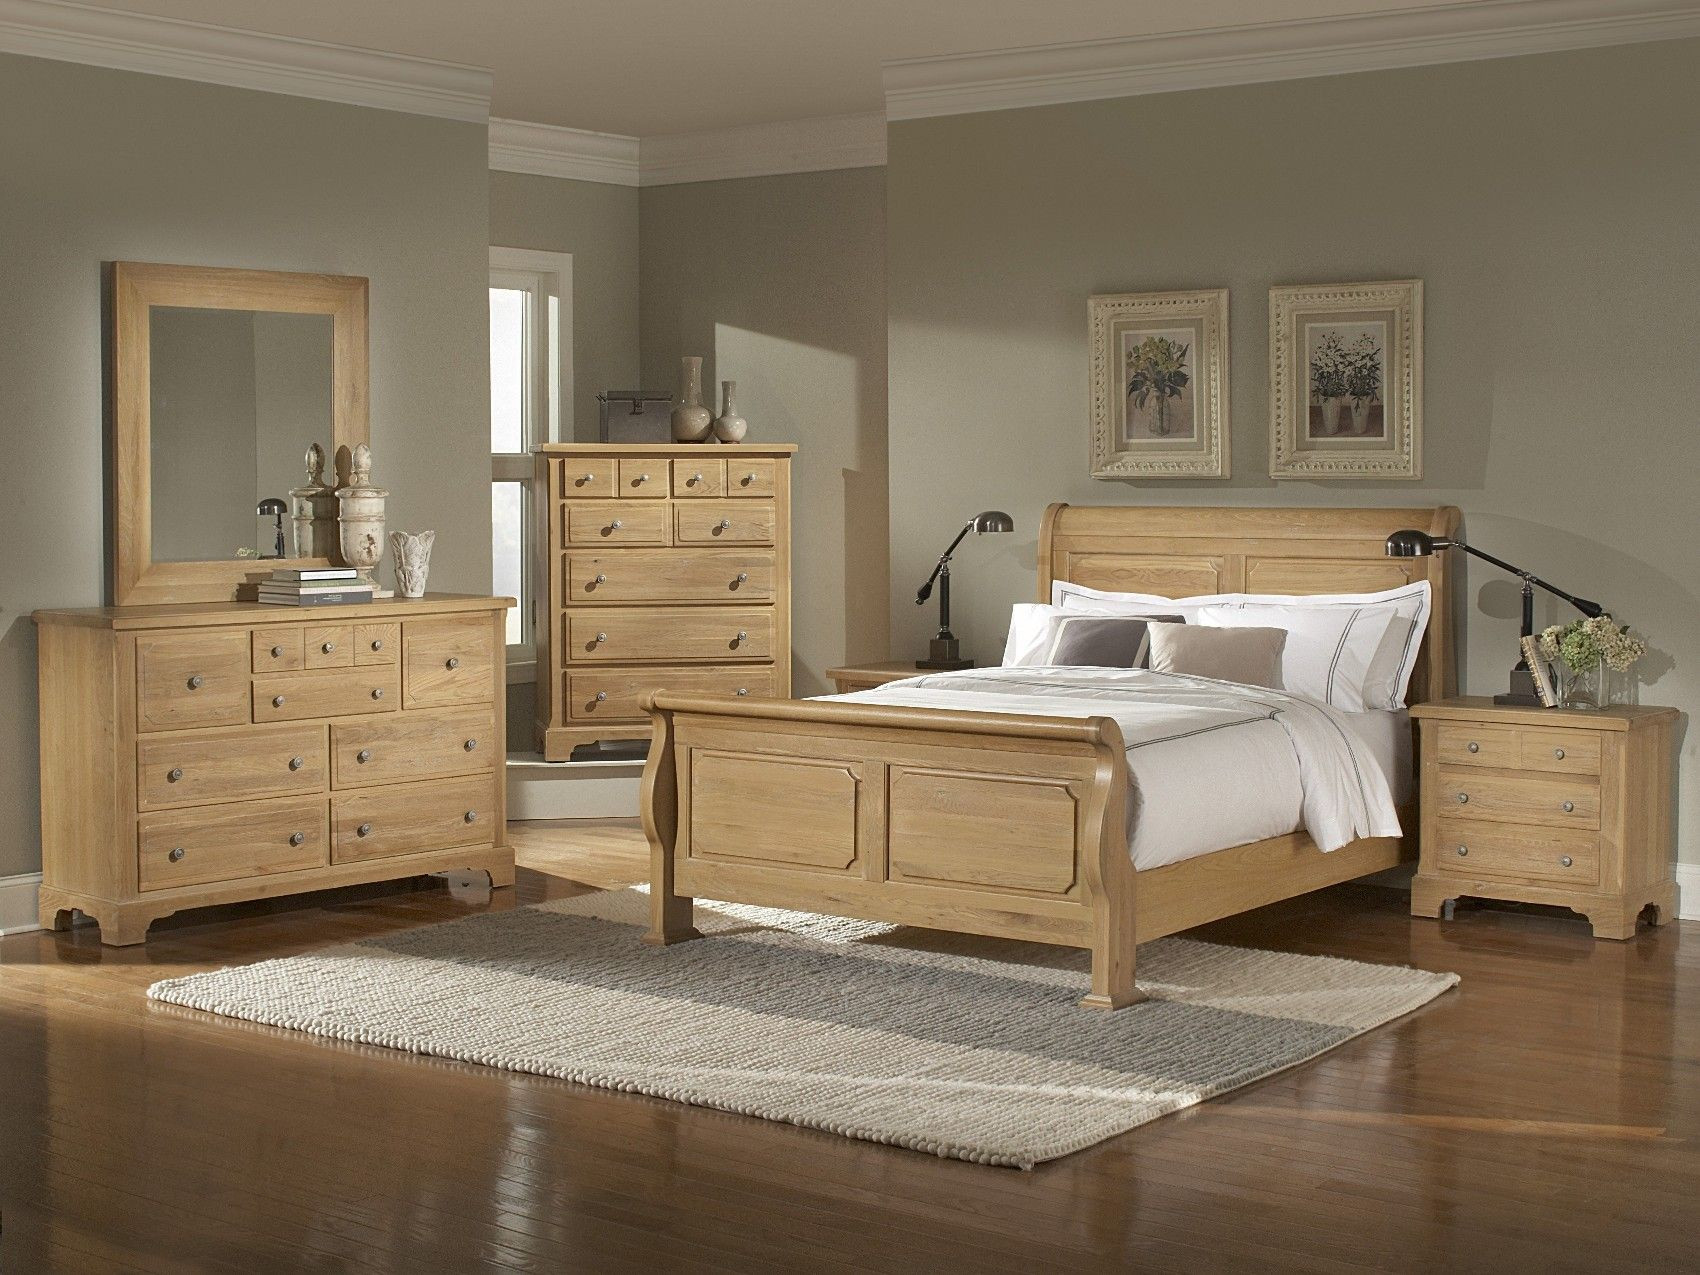 Light Wood Bedroom Set
 oak bedroom furniture sets